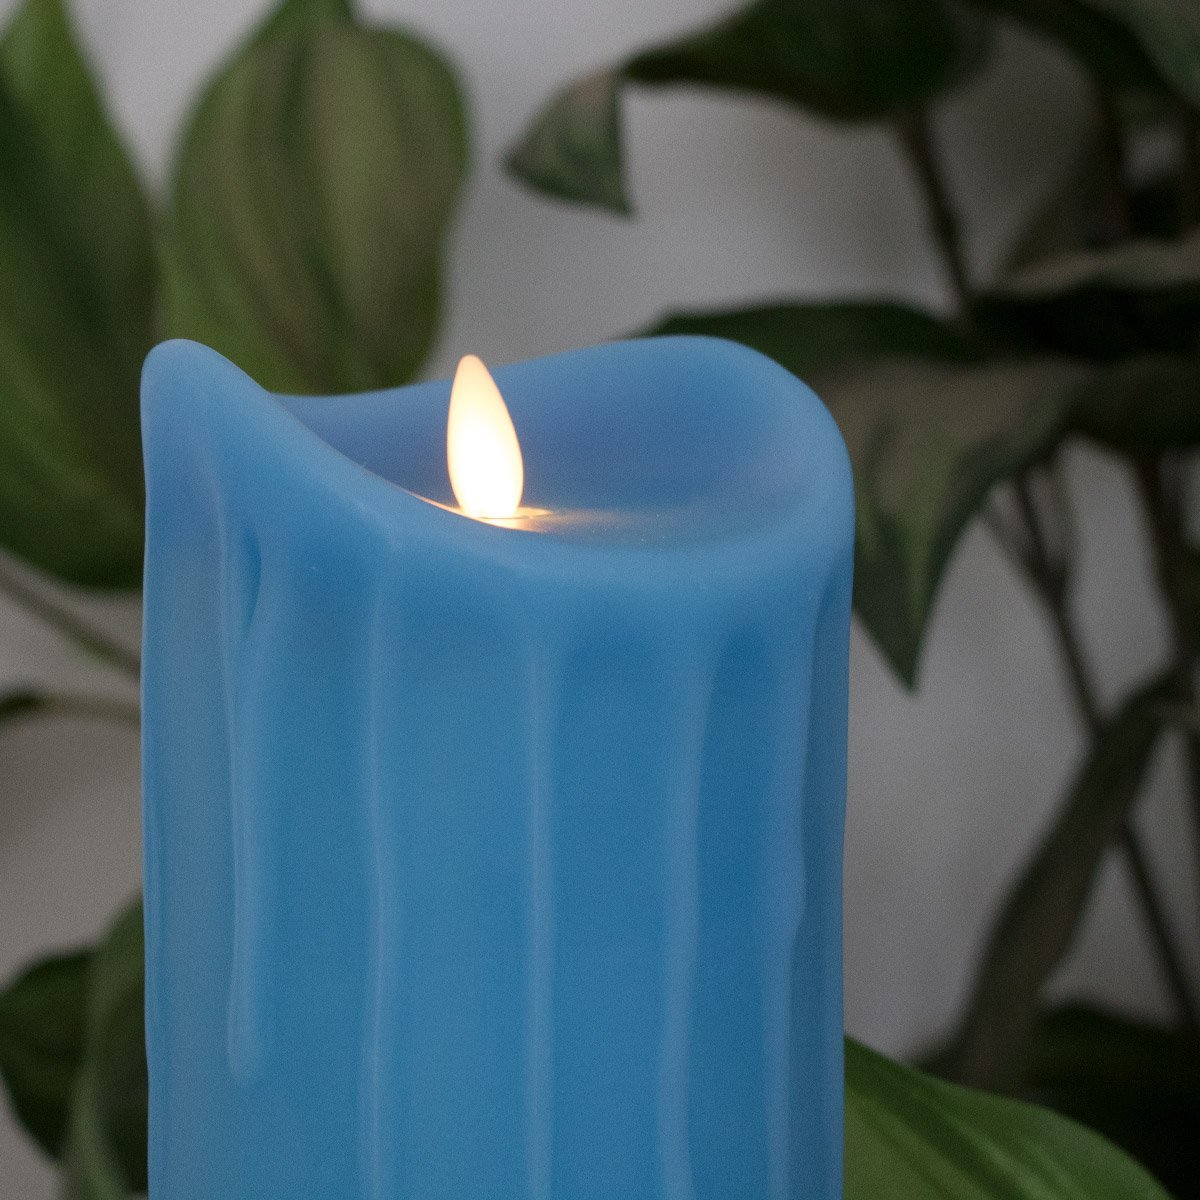 LED-Echtwachskerze mit "Flamme", Hellblau, 18 cm, Wachstropfendesign